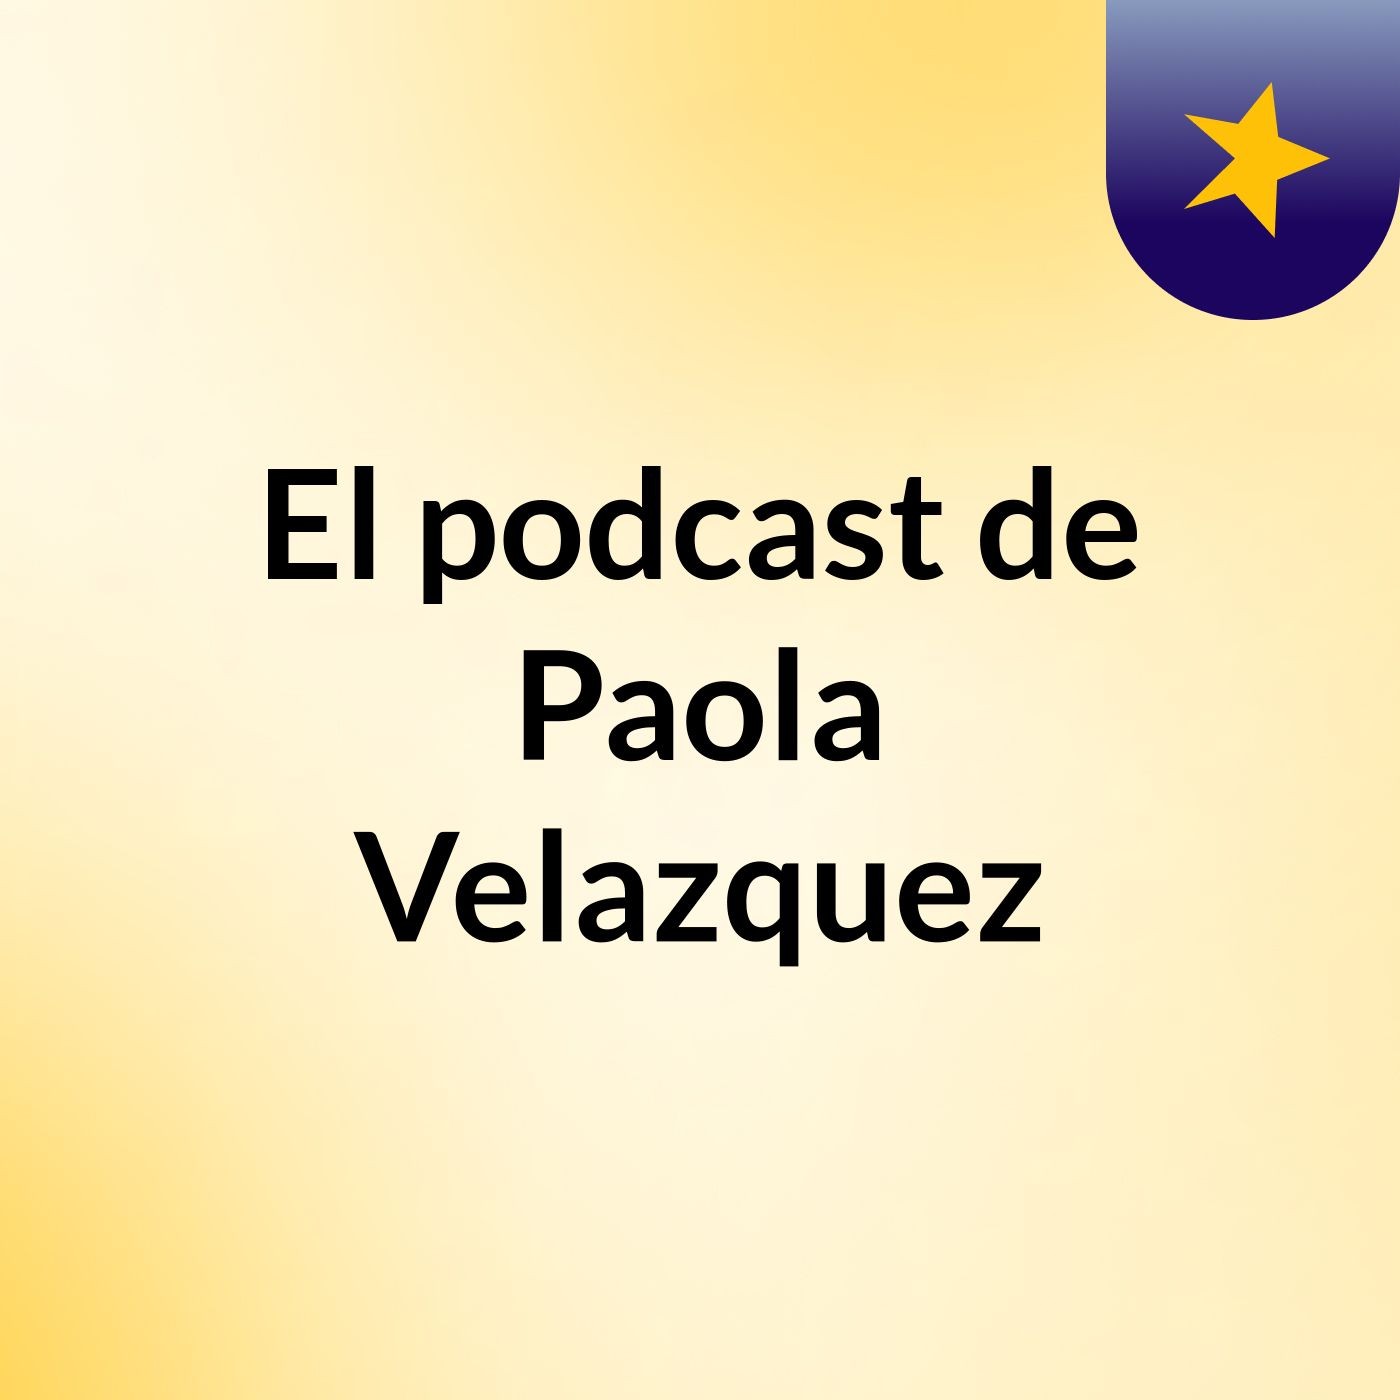 El podcast de Paola Velazquez